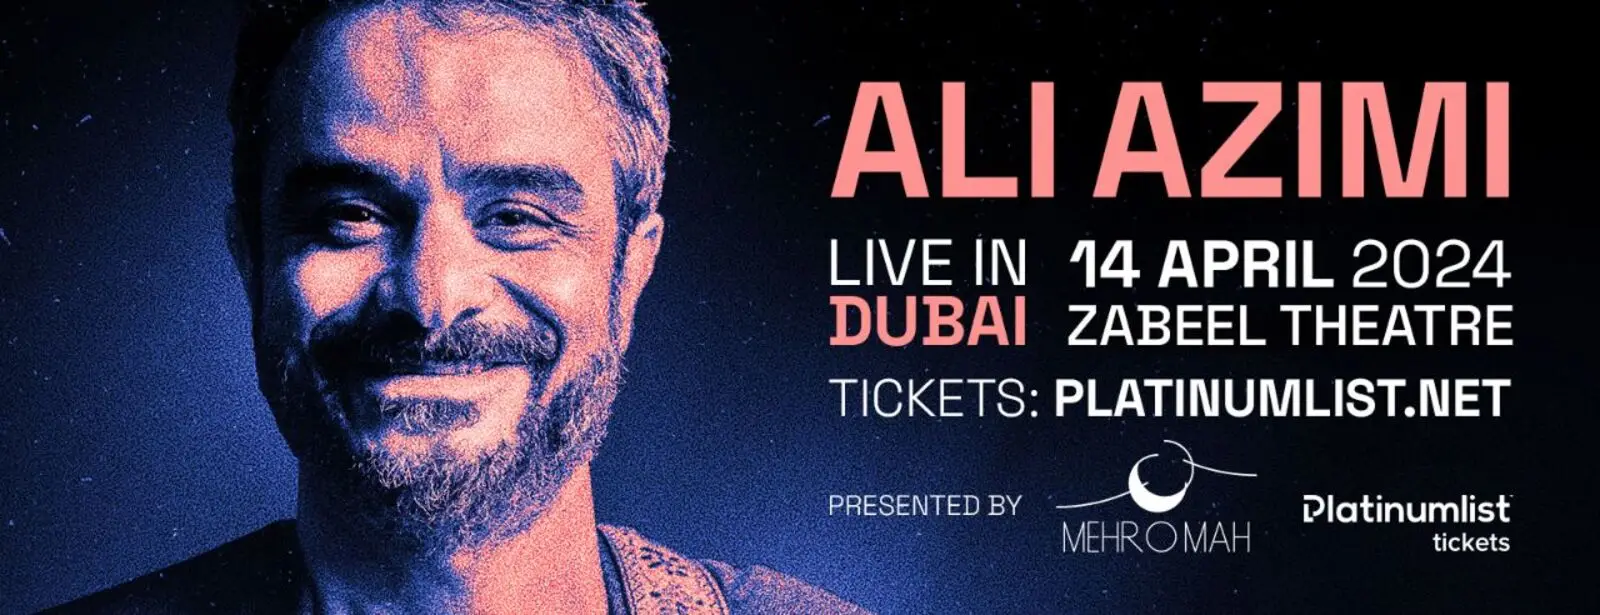 Ali Azimi Concert at Zabeel Theatre, Dubai || Wow Emirates